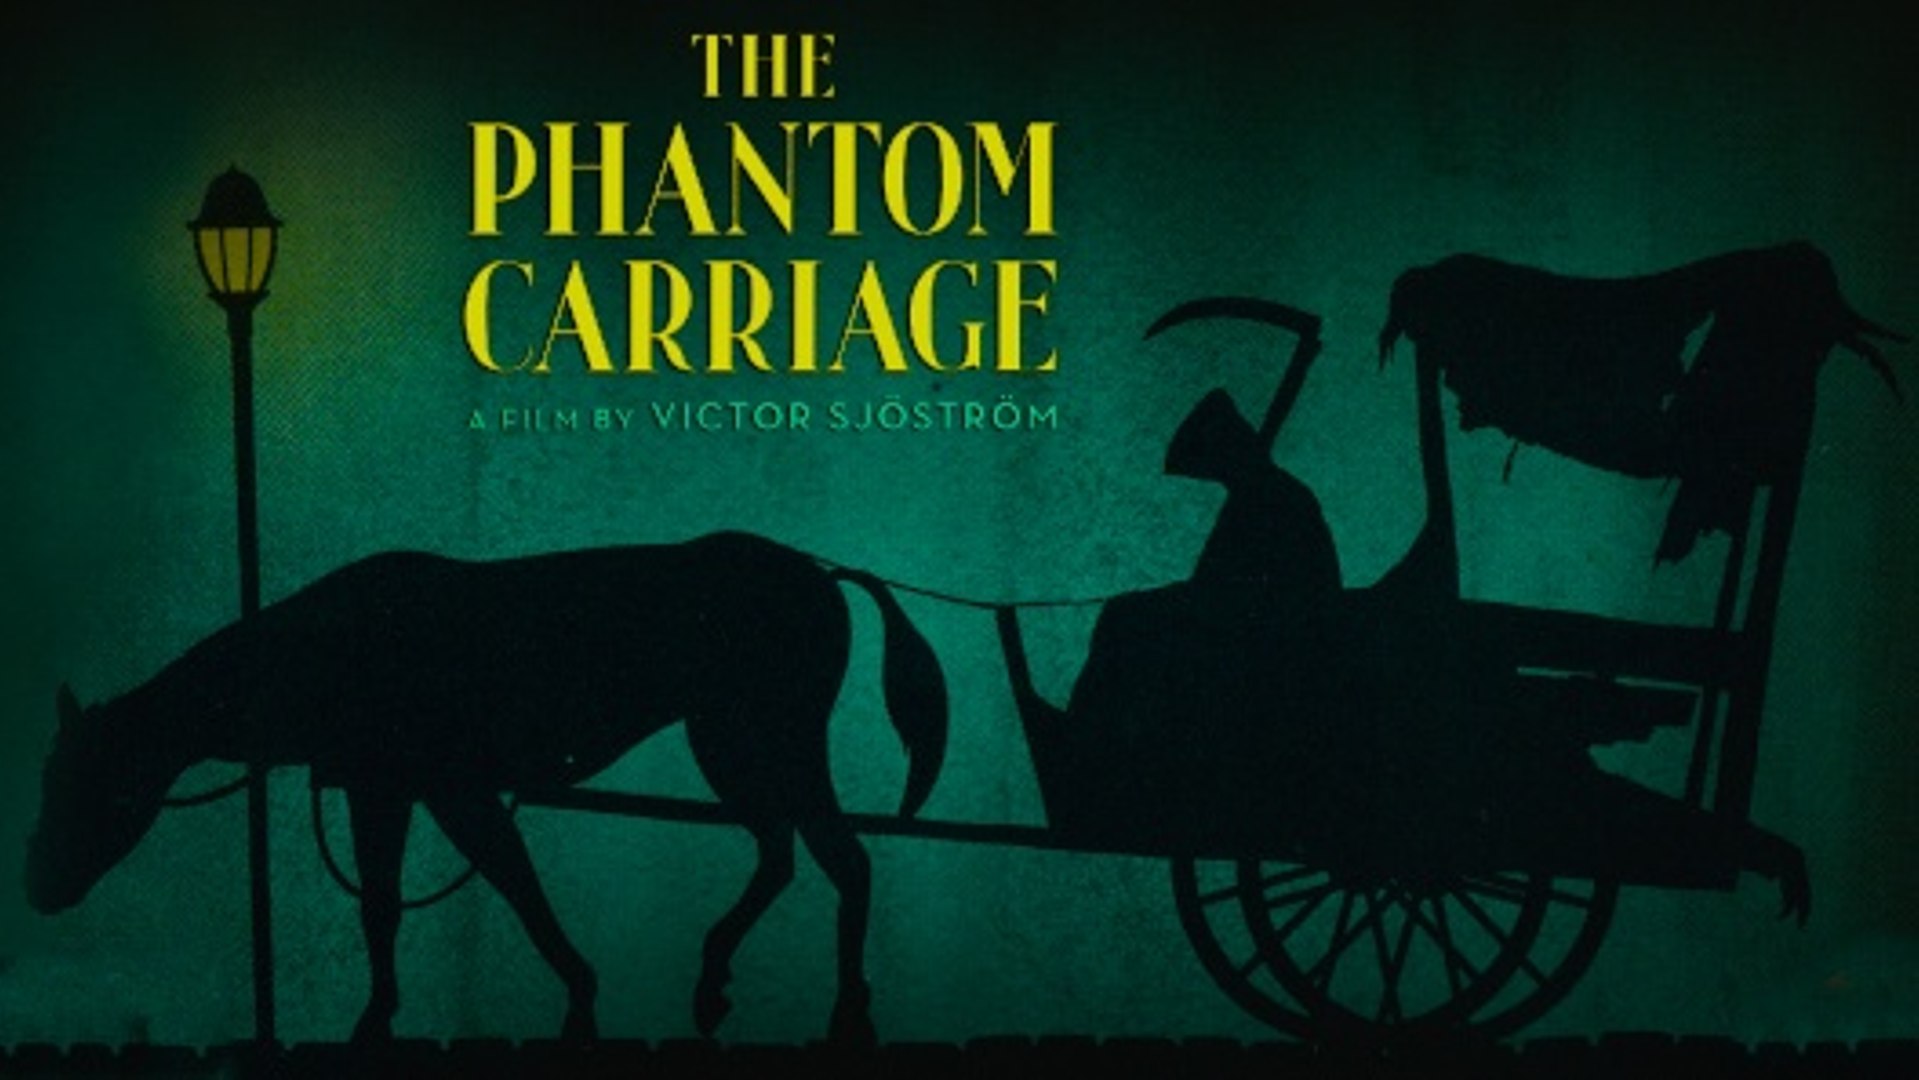 the phantom carriage 31 days of horror